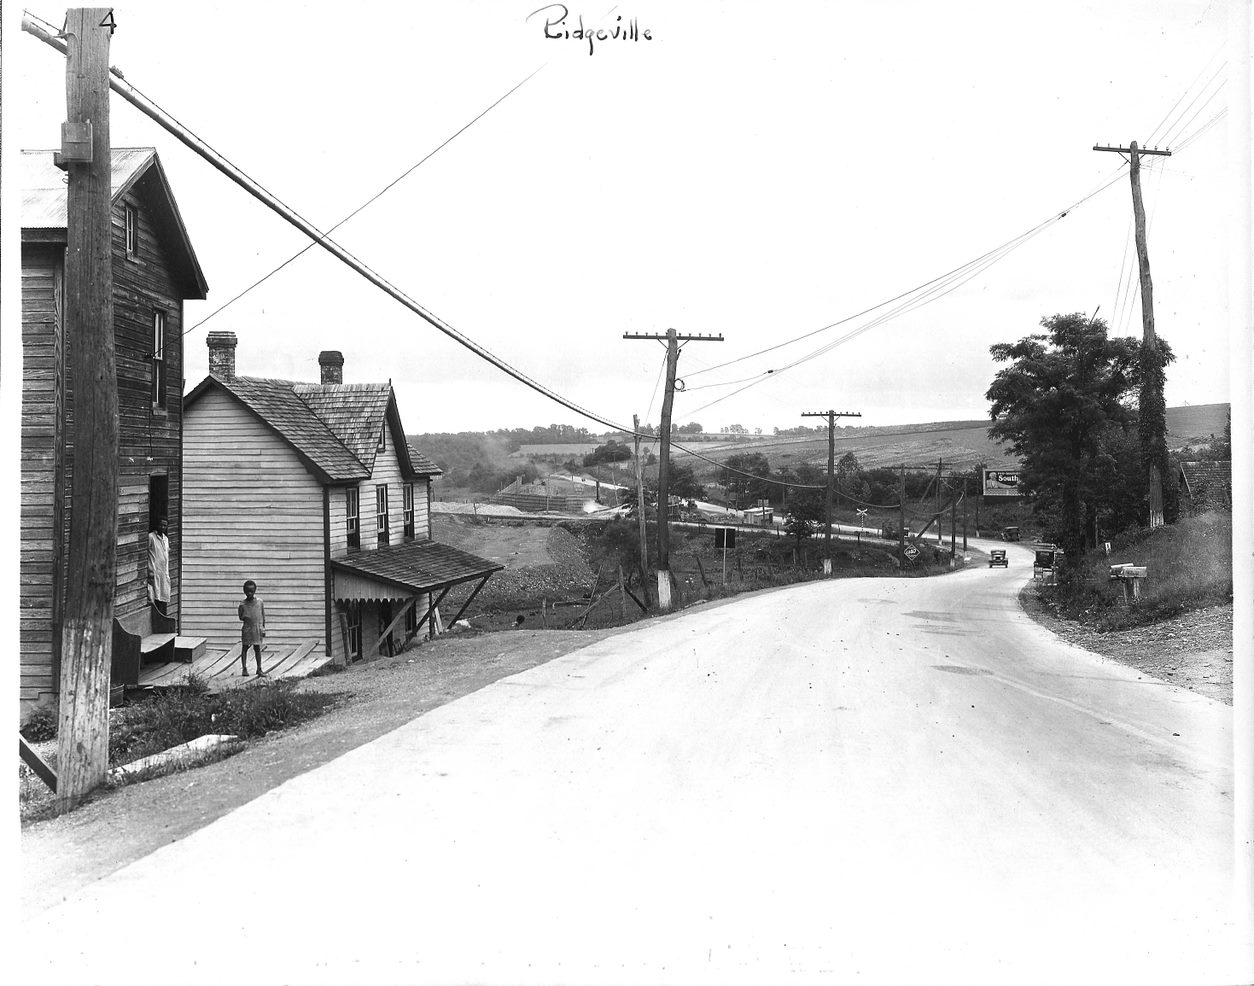 Ridgeville historical photo